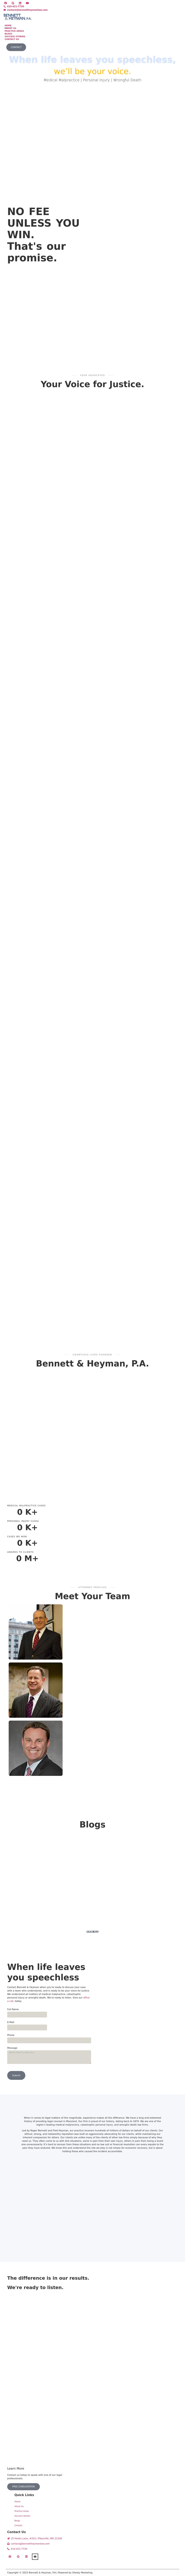 Bennett & Heyman, P.A. - Pikesville MD Lawyers